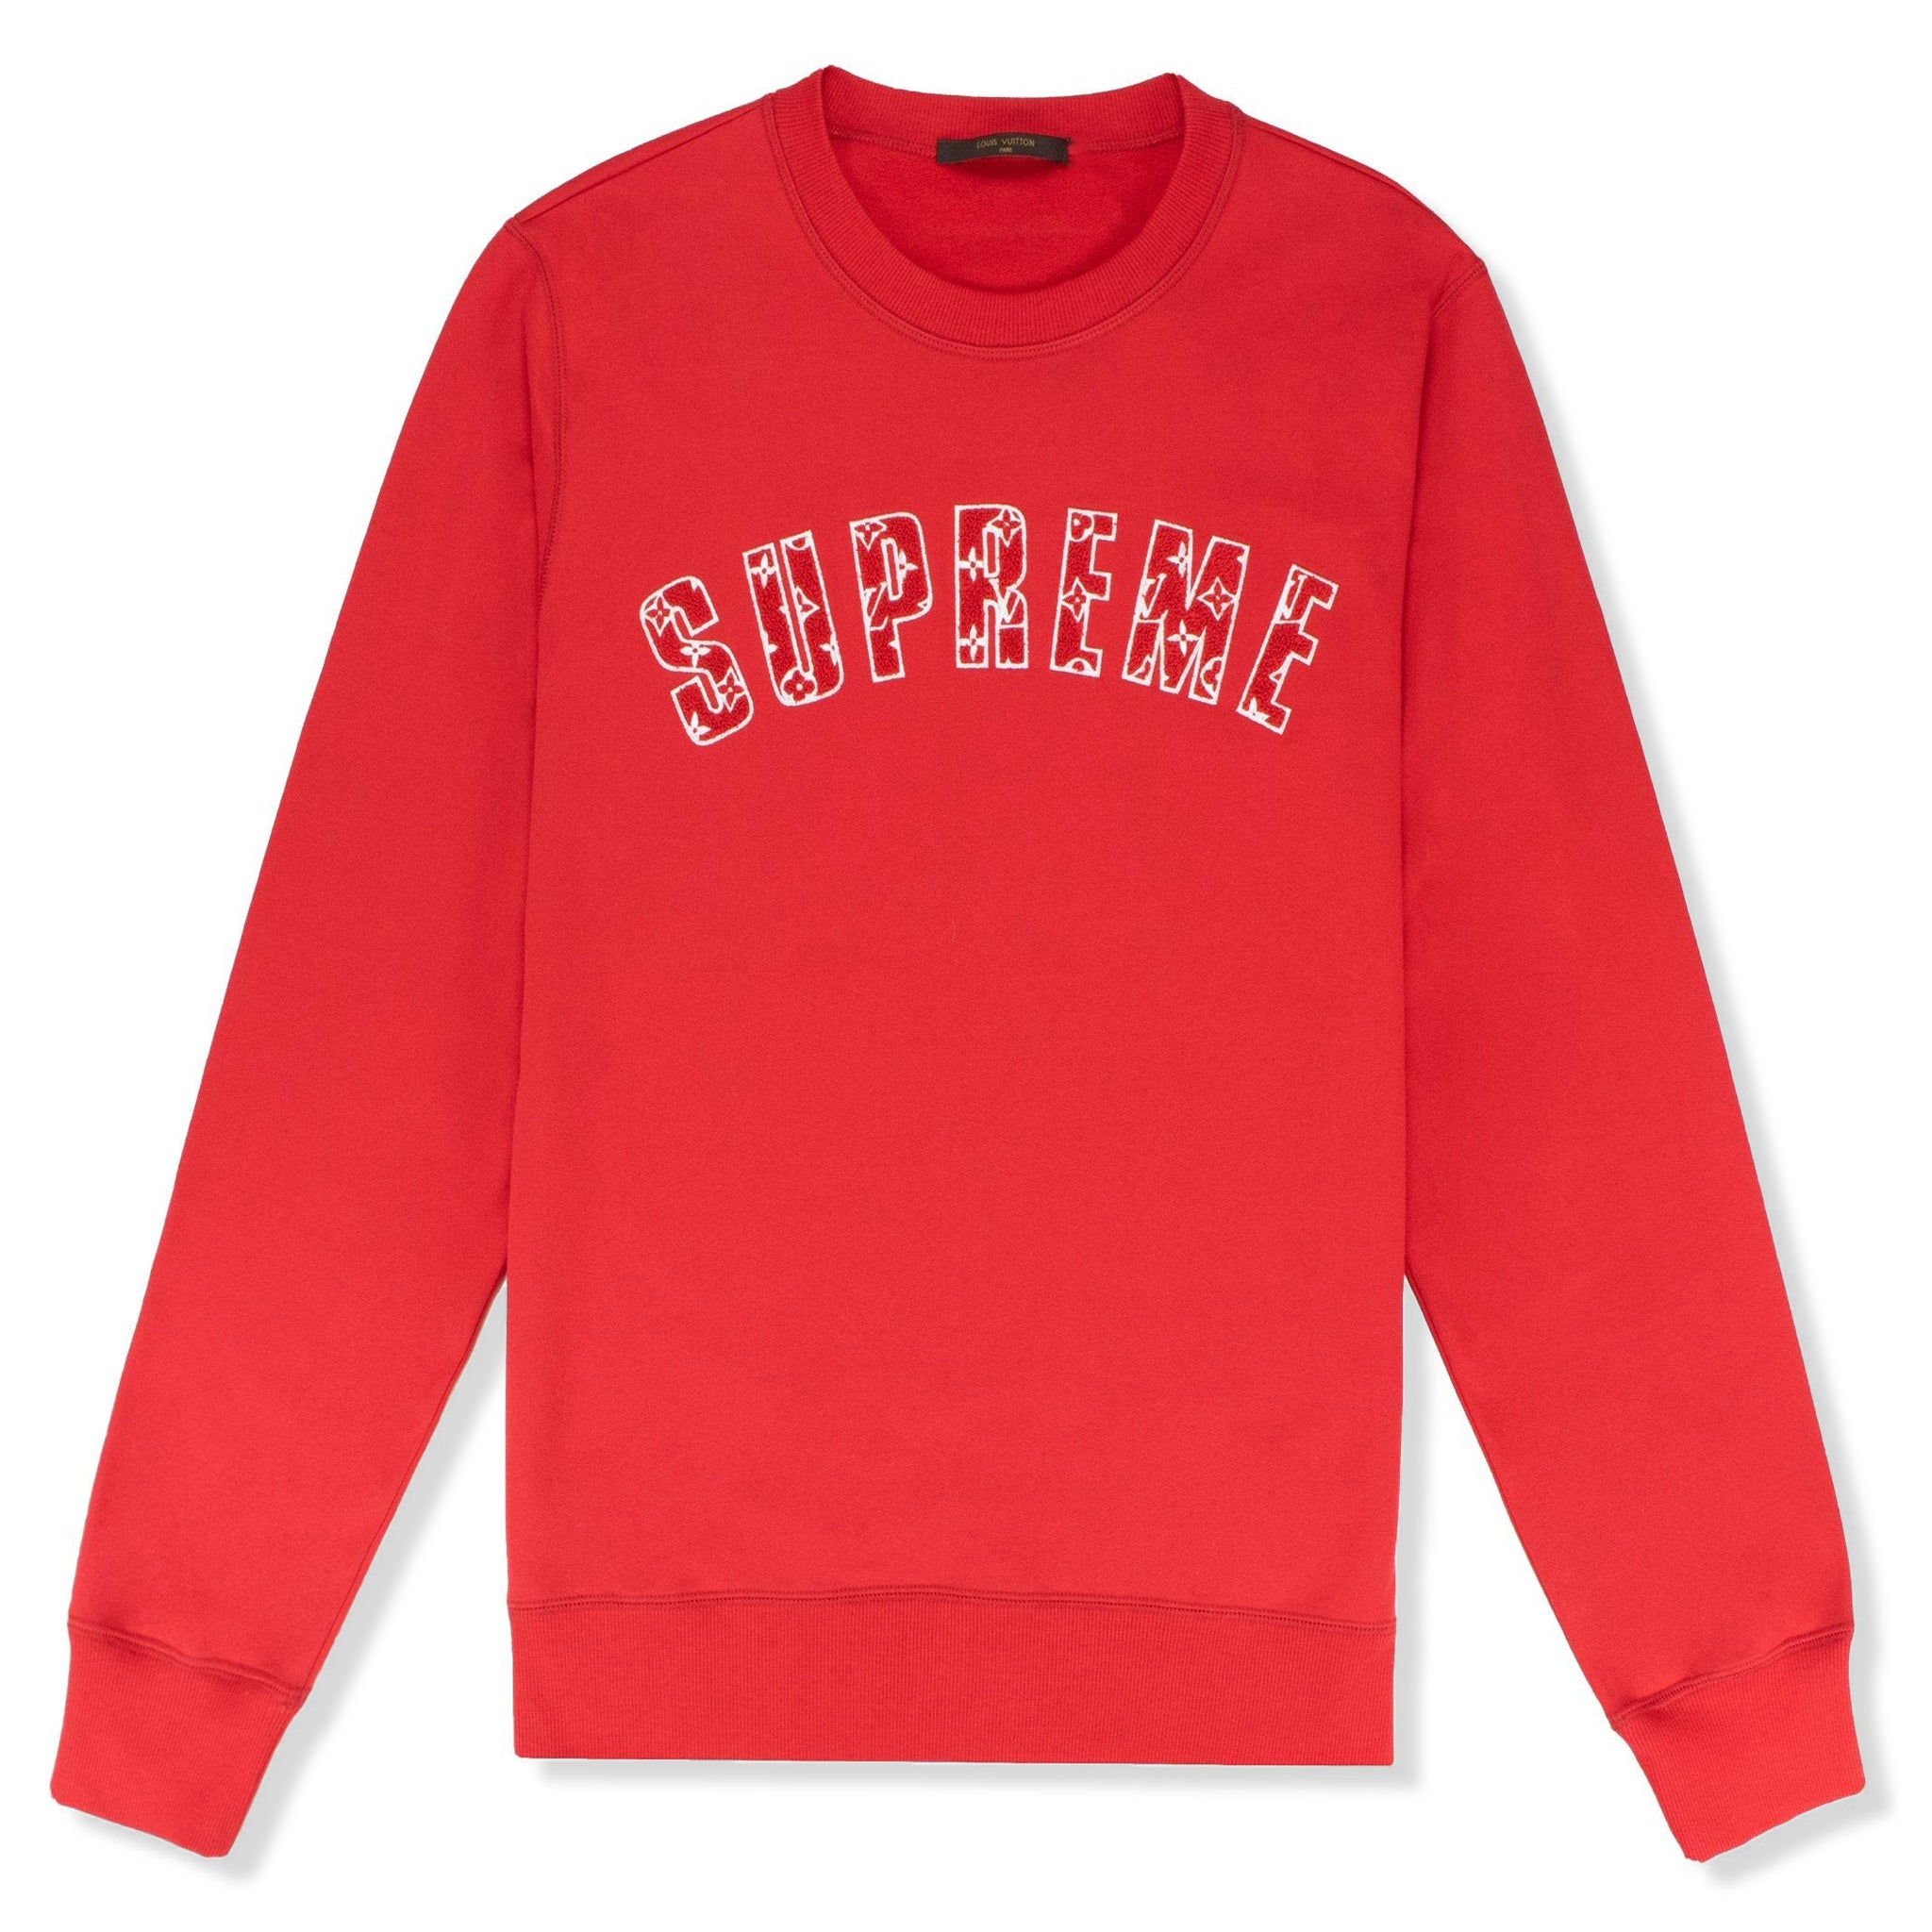 Supreme x Louis Vuitton Arc Logo Red Sweatshirt - XXXL / Red